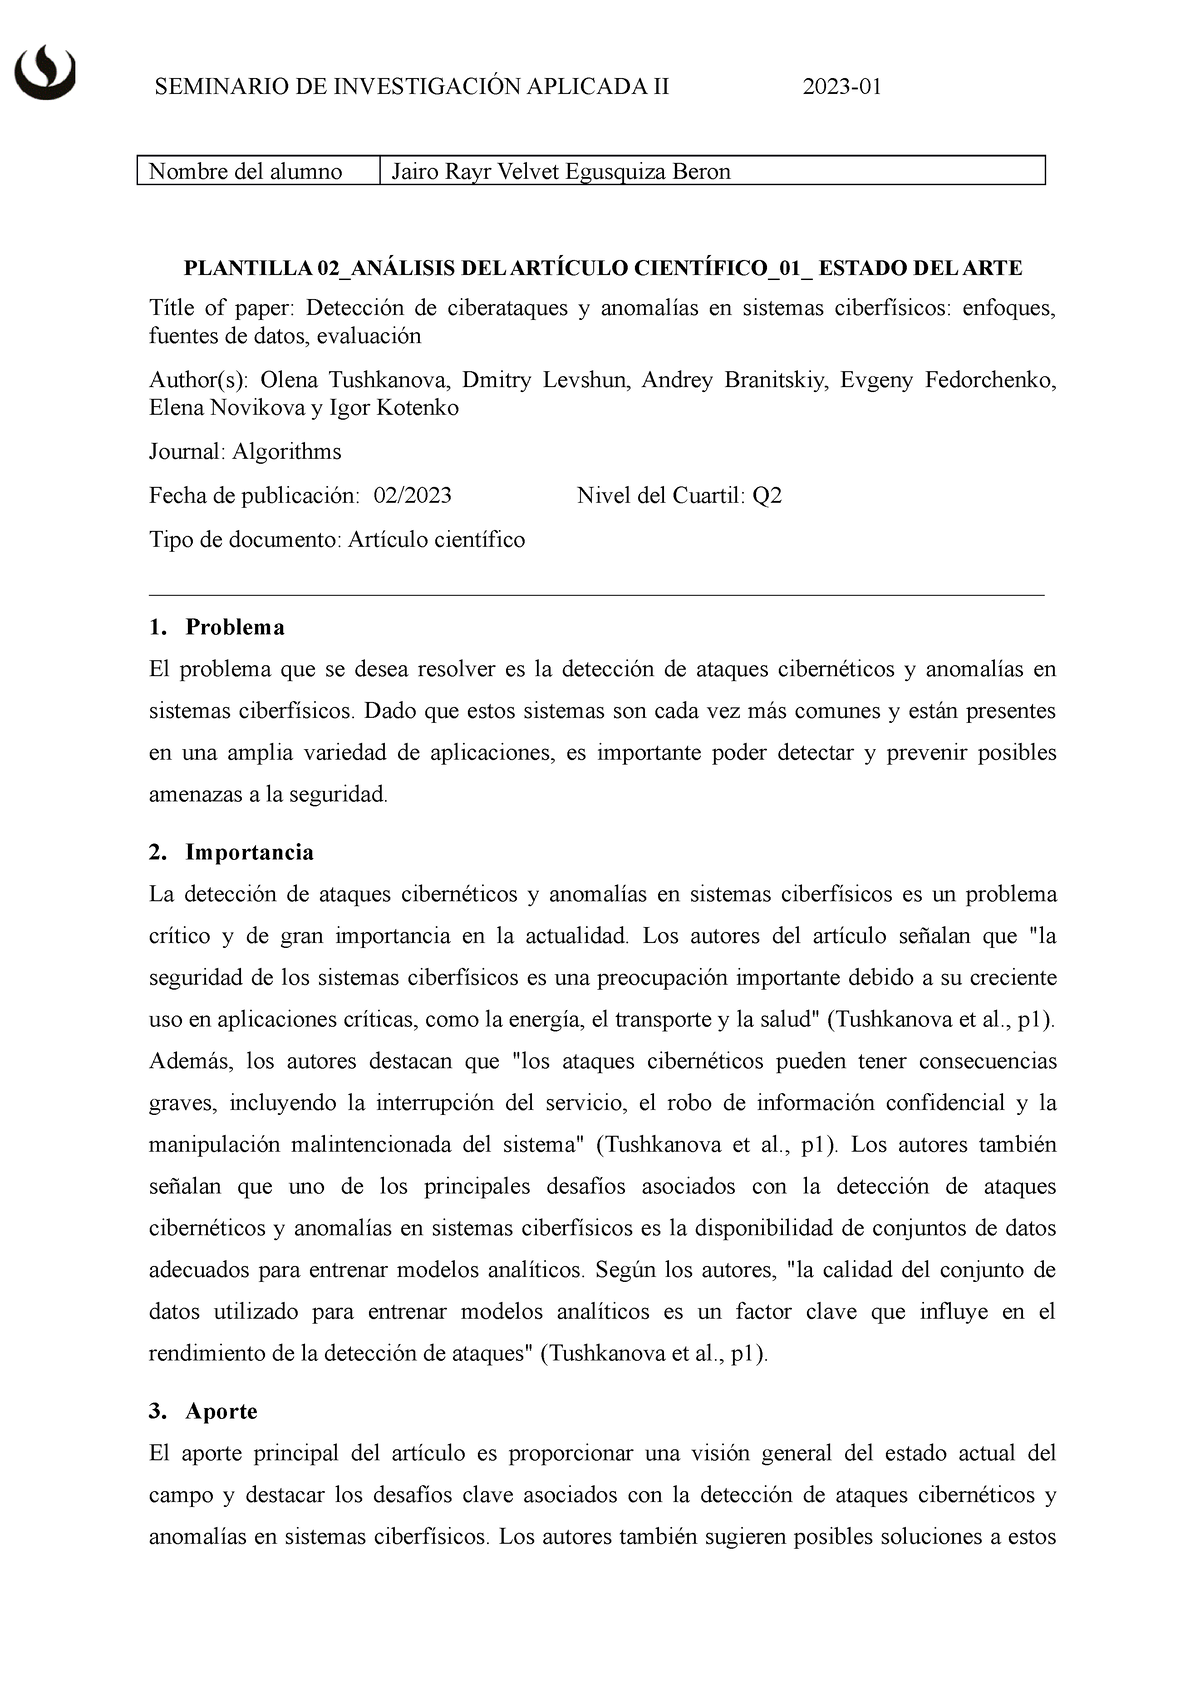 06 TB2 Analisis DE Articulo Cientifico 2023 - Nombre del alumno Jairo ...